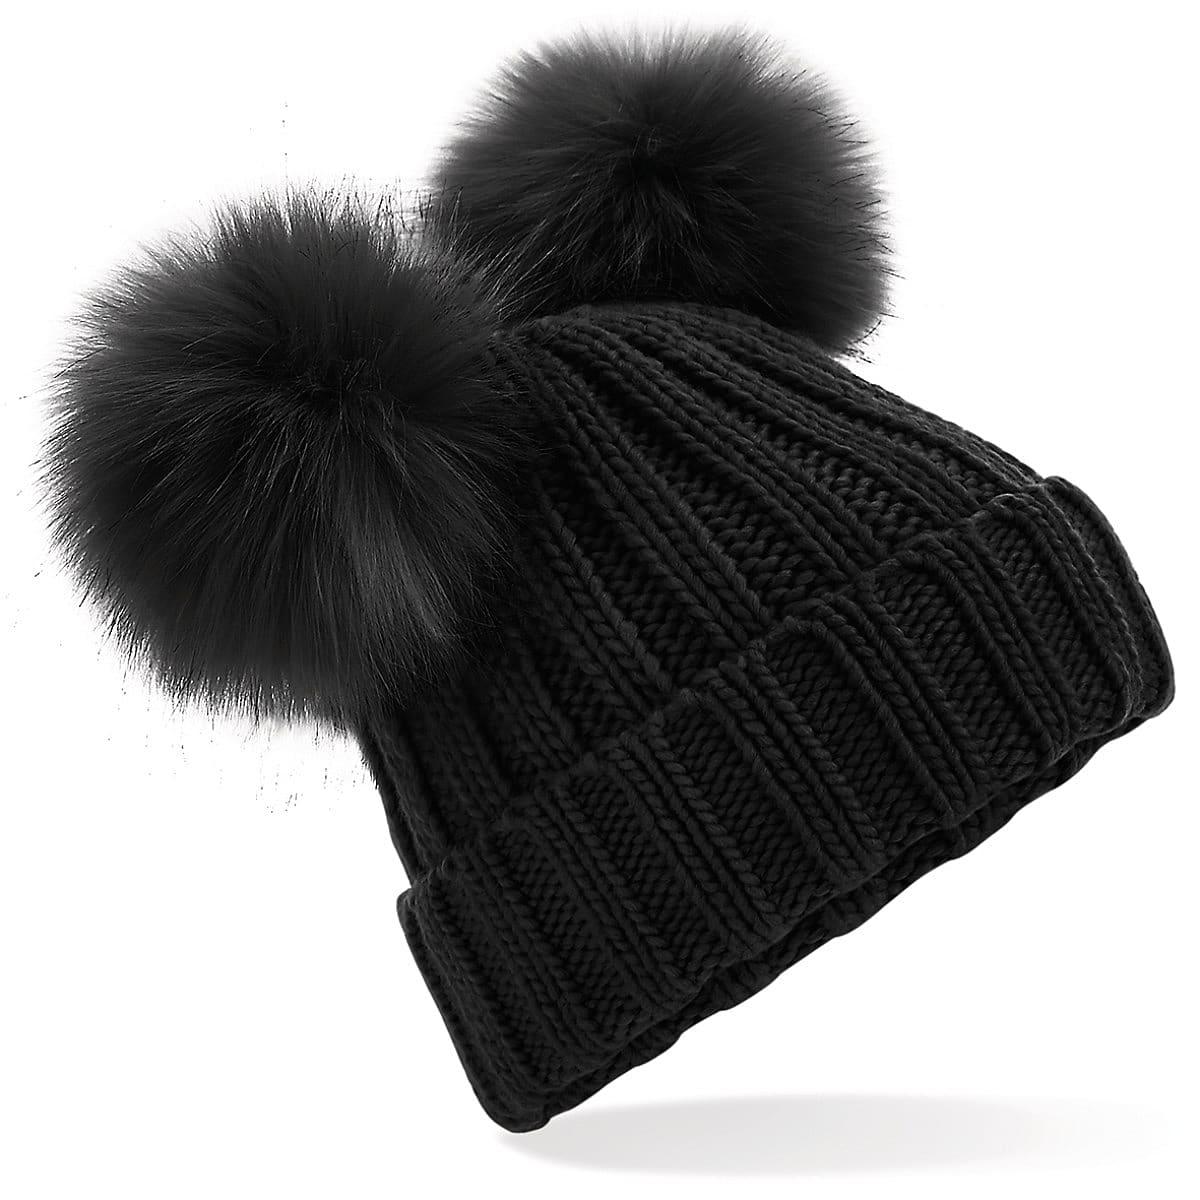 Beechfield FauxFur Double Pop Pom Beanie Hat in Black (Product Code: B414)